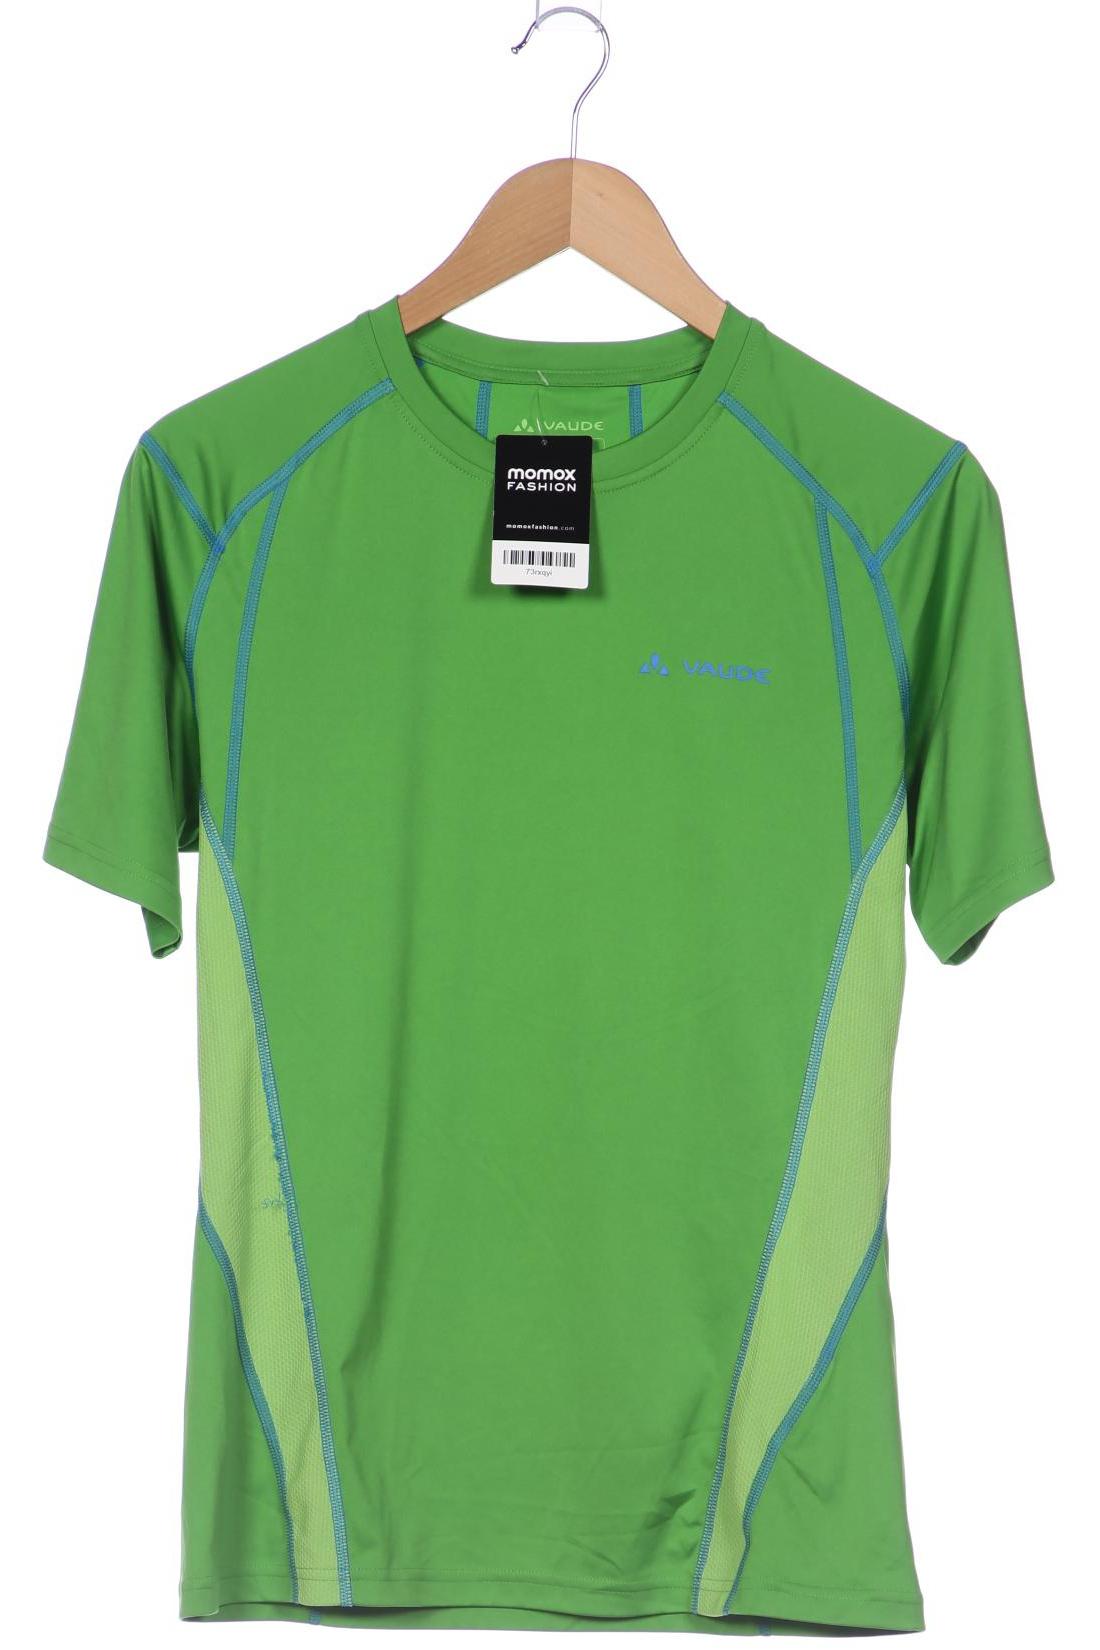 Vaude Herren T-Shirt, grün, Gr. 48 von Vaude